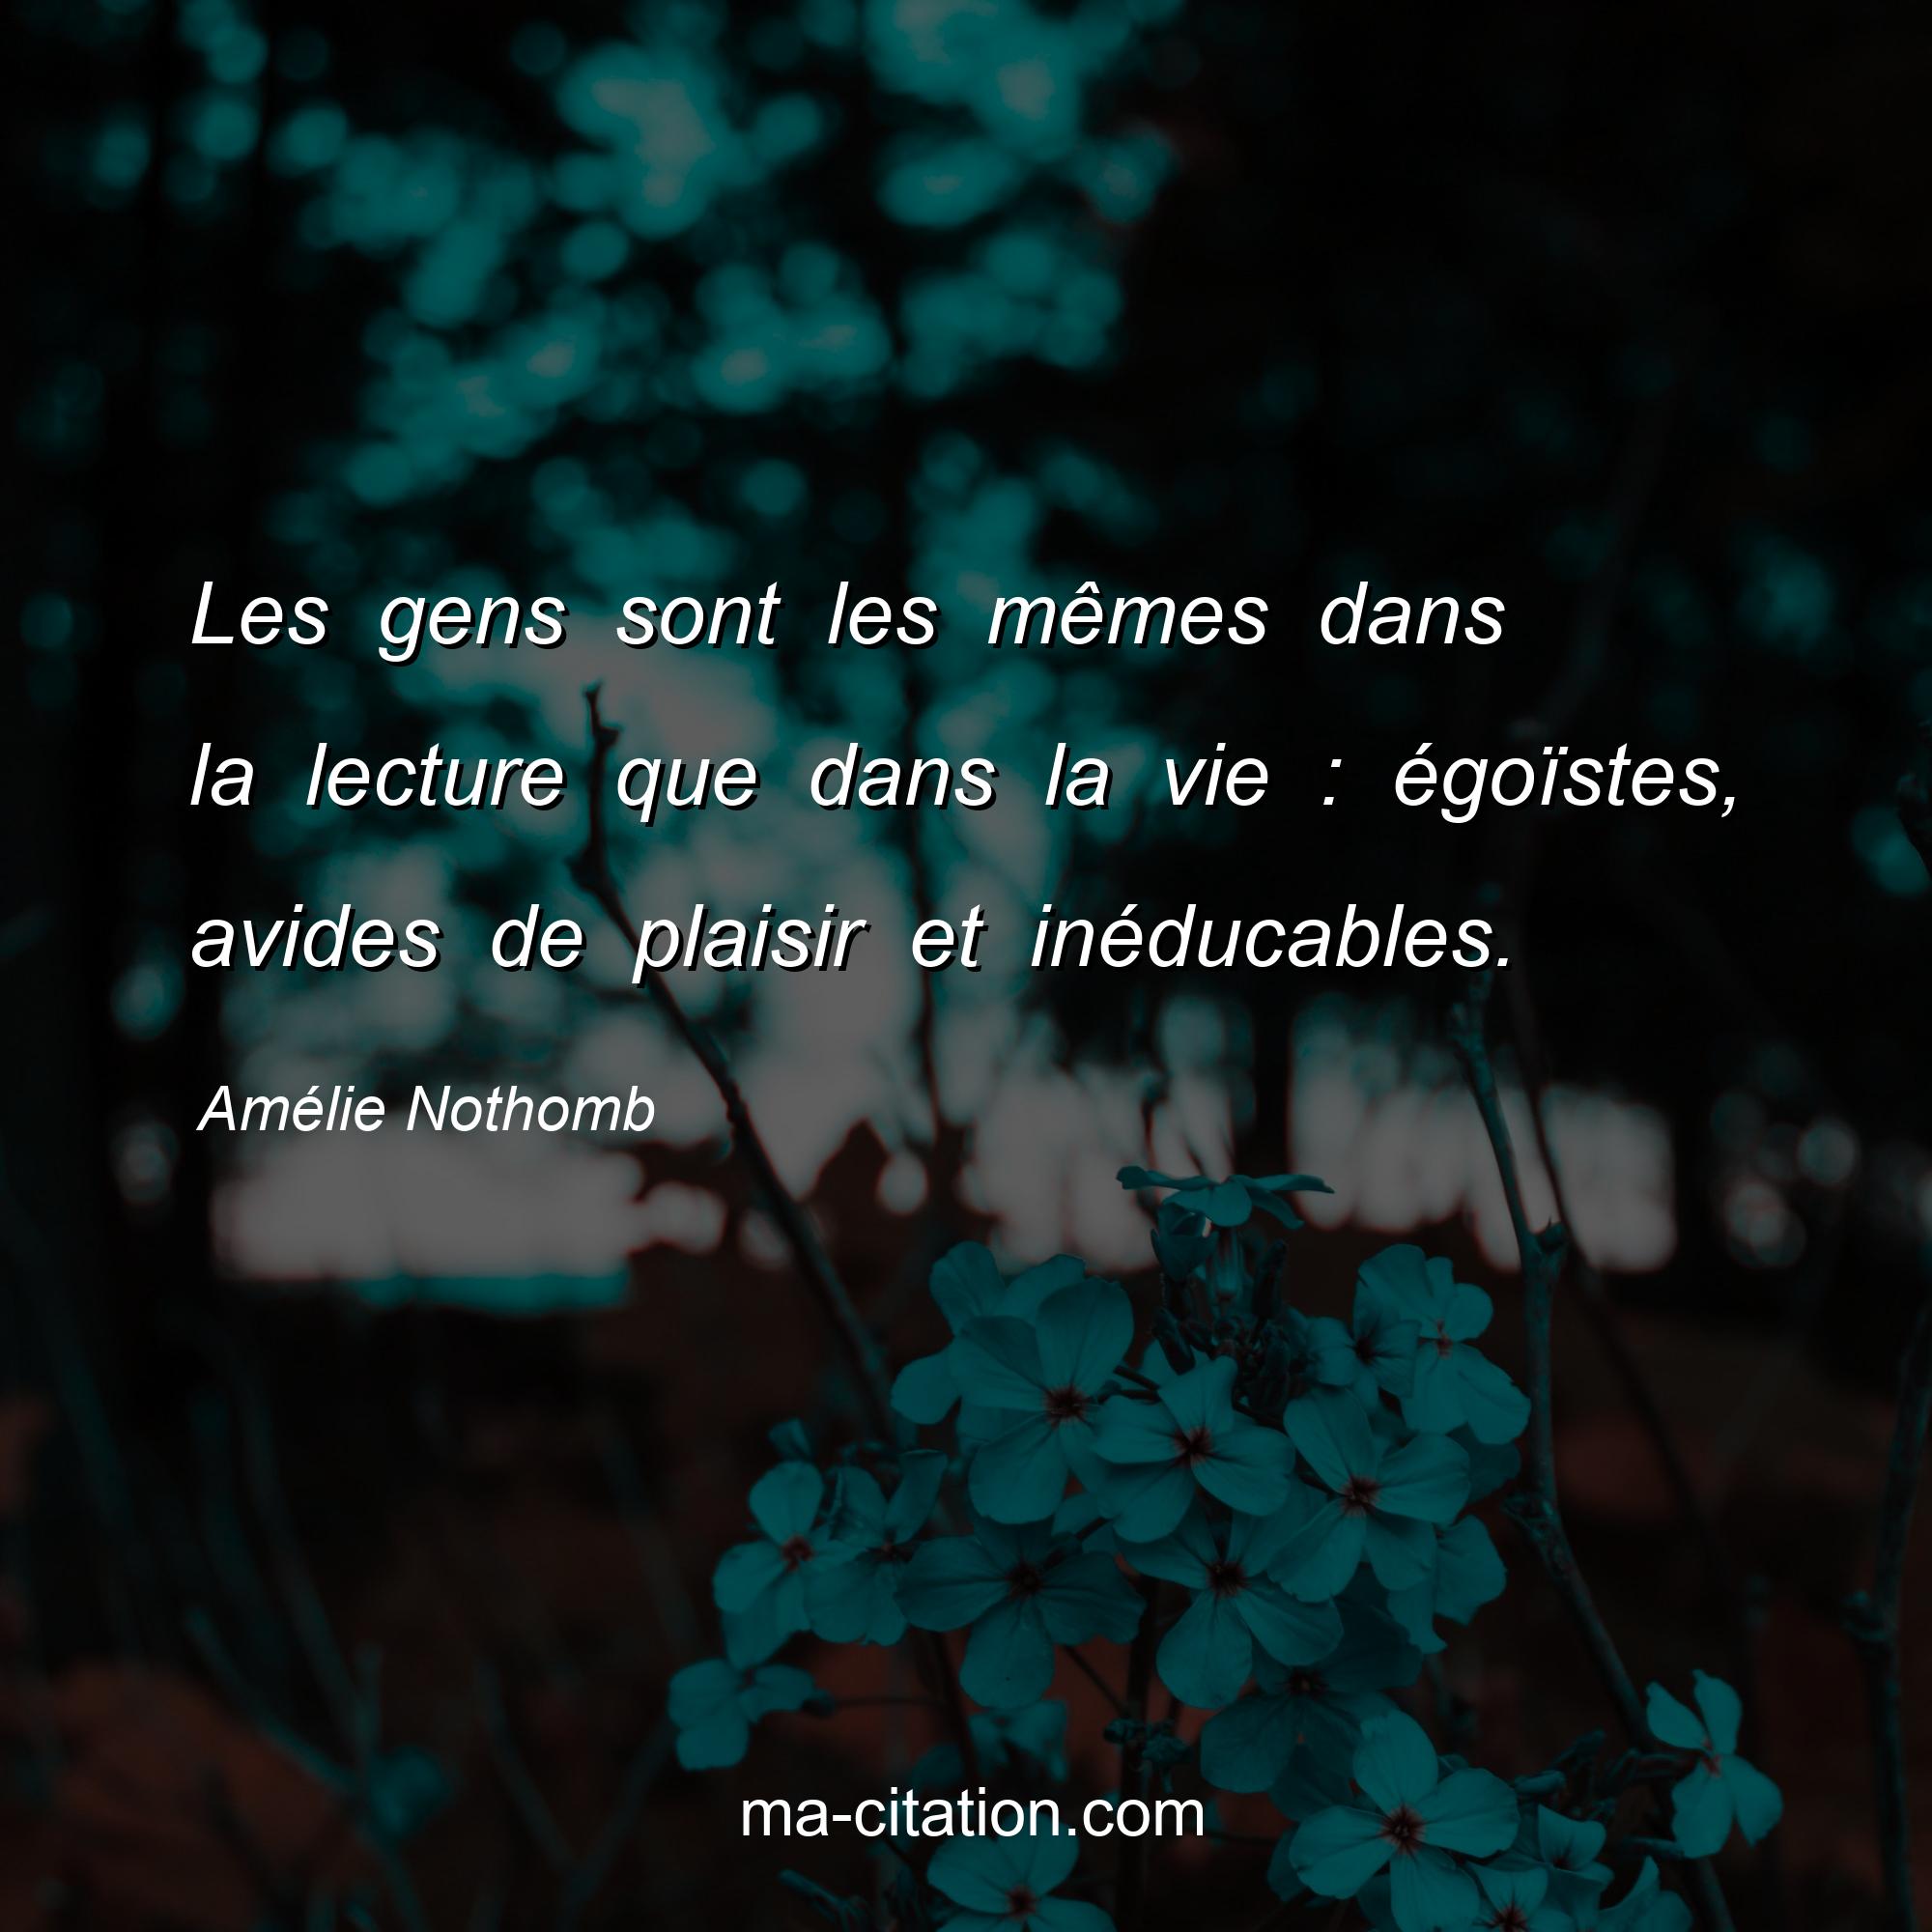 Amélie Nothomb : Les gens sont les mêmes dans la lecture que dans la vie : égoïstes, avides de plaisir et inéducables.